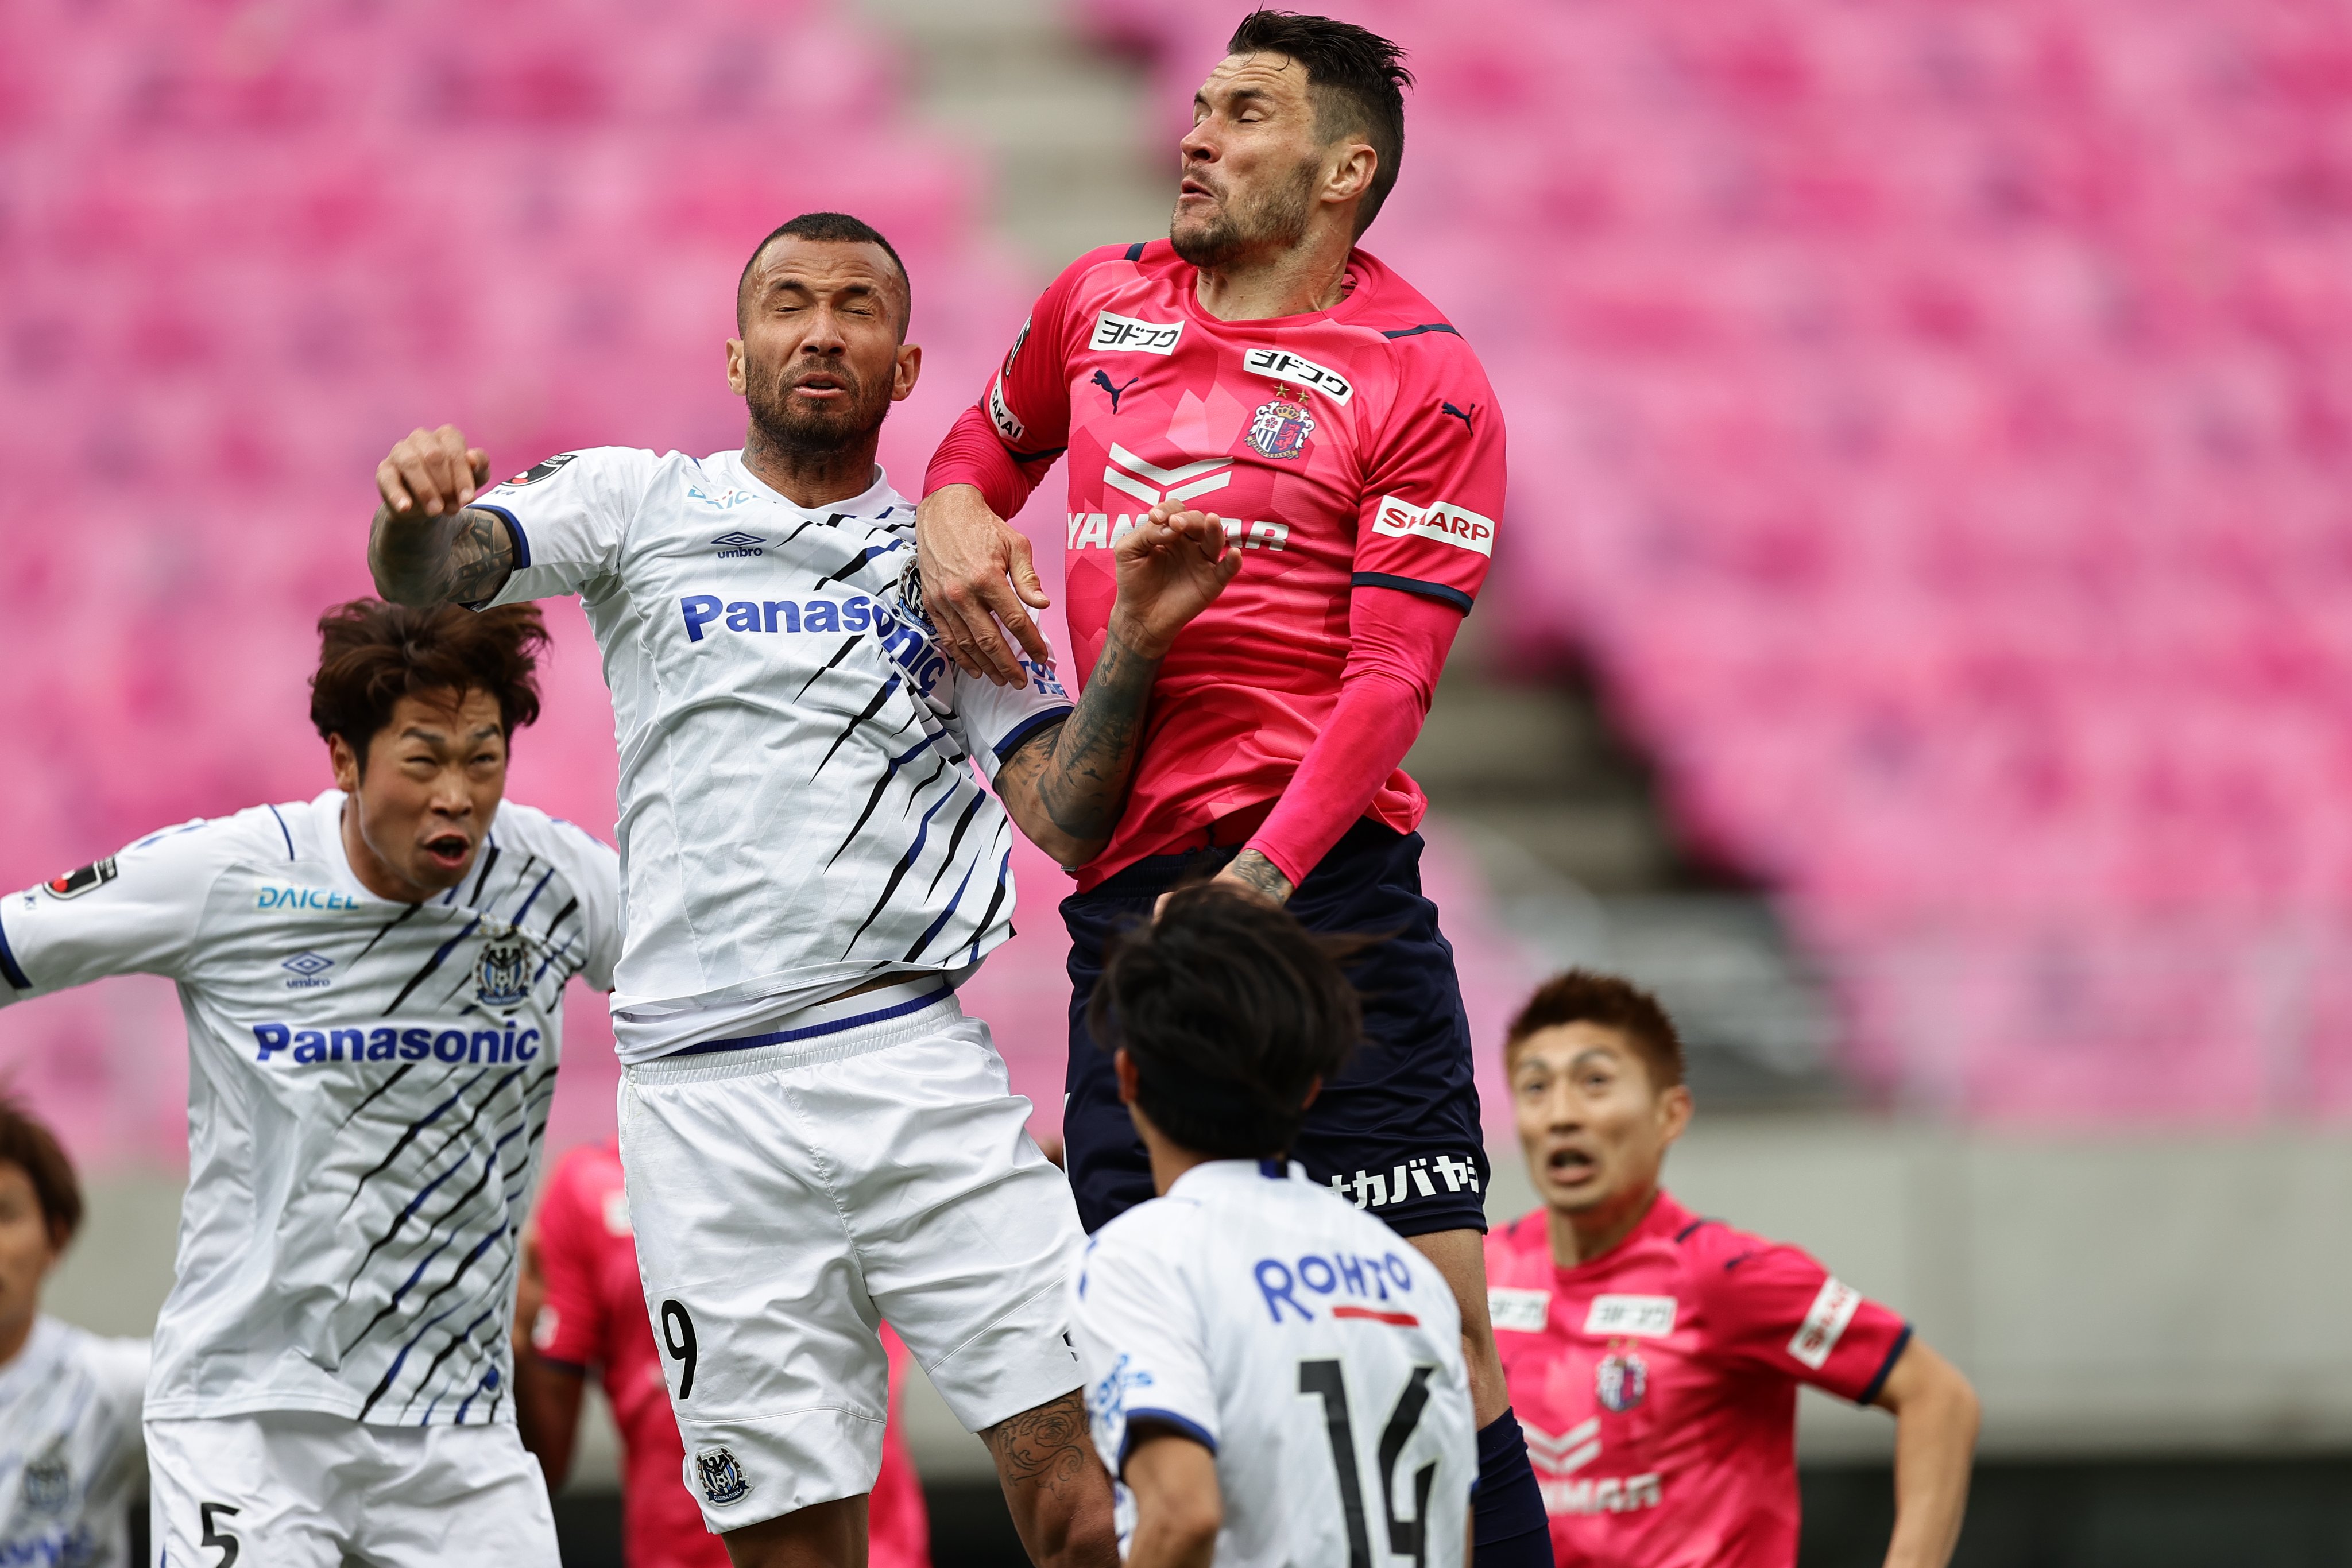 Derbi di J1 League Musim Ini: Pertarungan Panas Kasta Teratas Liga Jepang